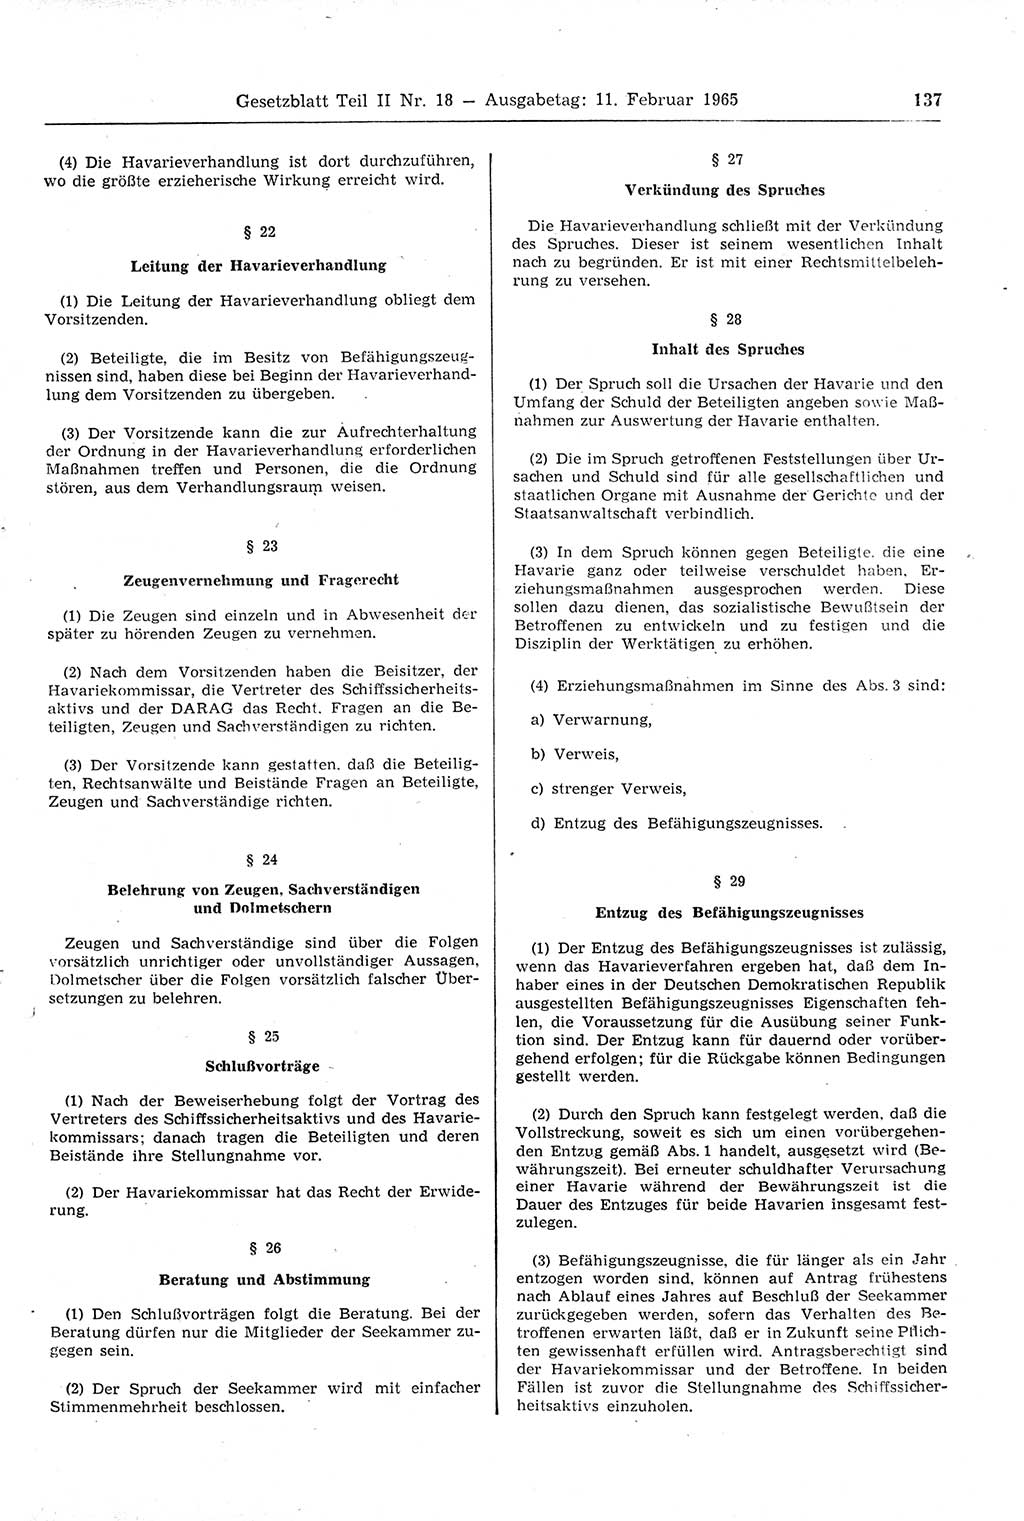 Gesetzblatt (GBl.) der Deutschen Demokratischen Republik (DDR) Teil ⅠⅠ 1965, Seite 137 (GBl. DDR ⅠⅠ 1965, S. 137)